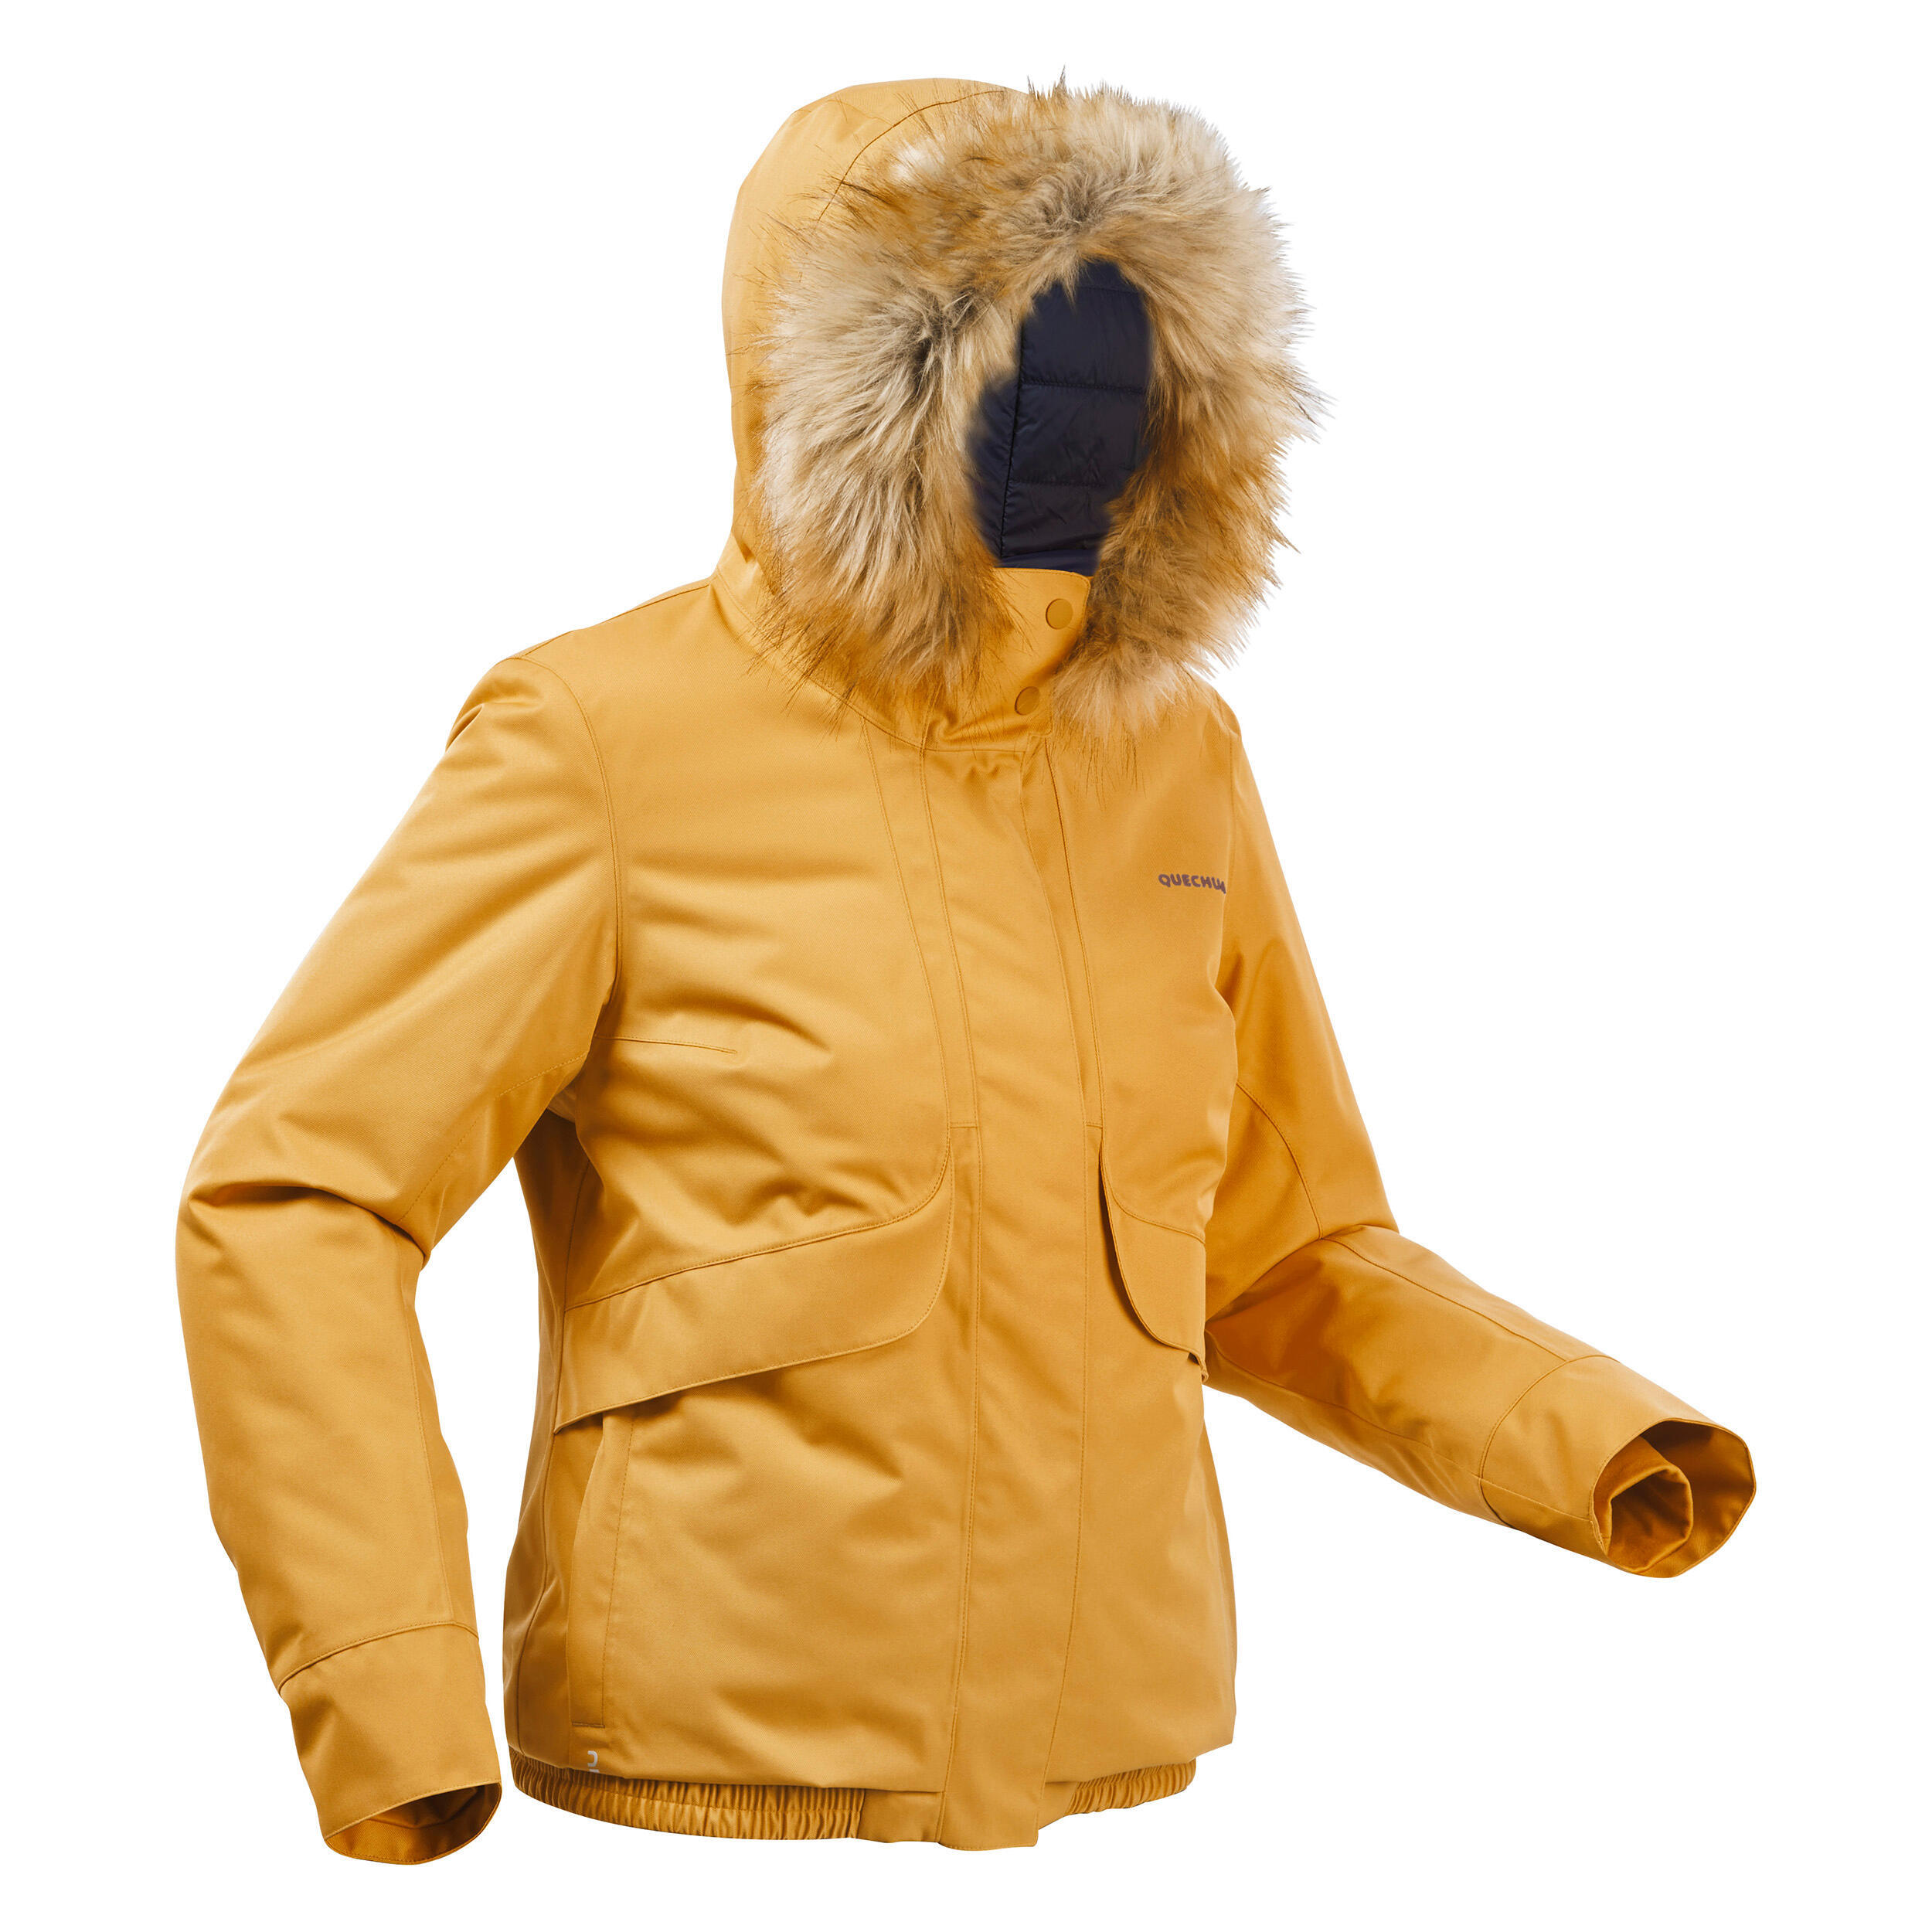 Women’s waterproof winter hiking jacket - SH500 -8°C 4/14